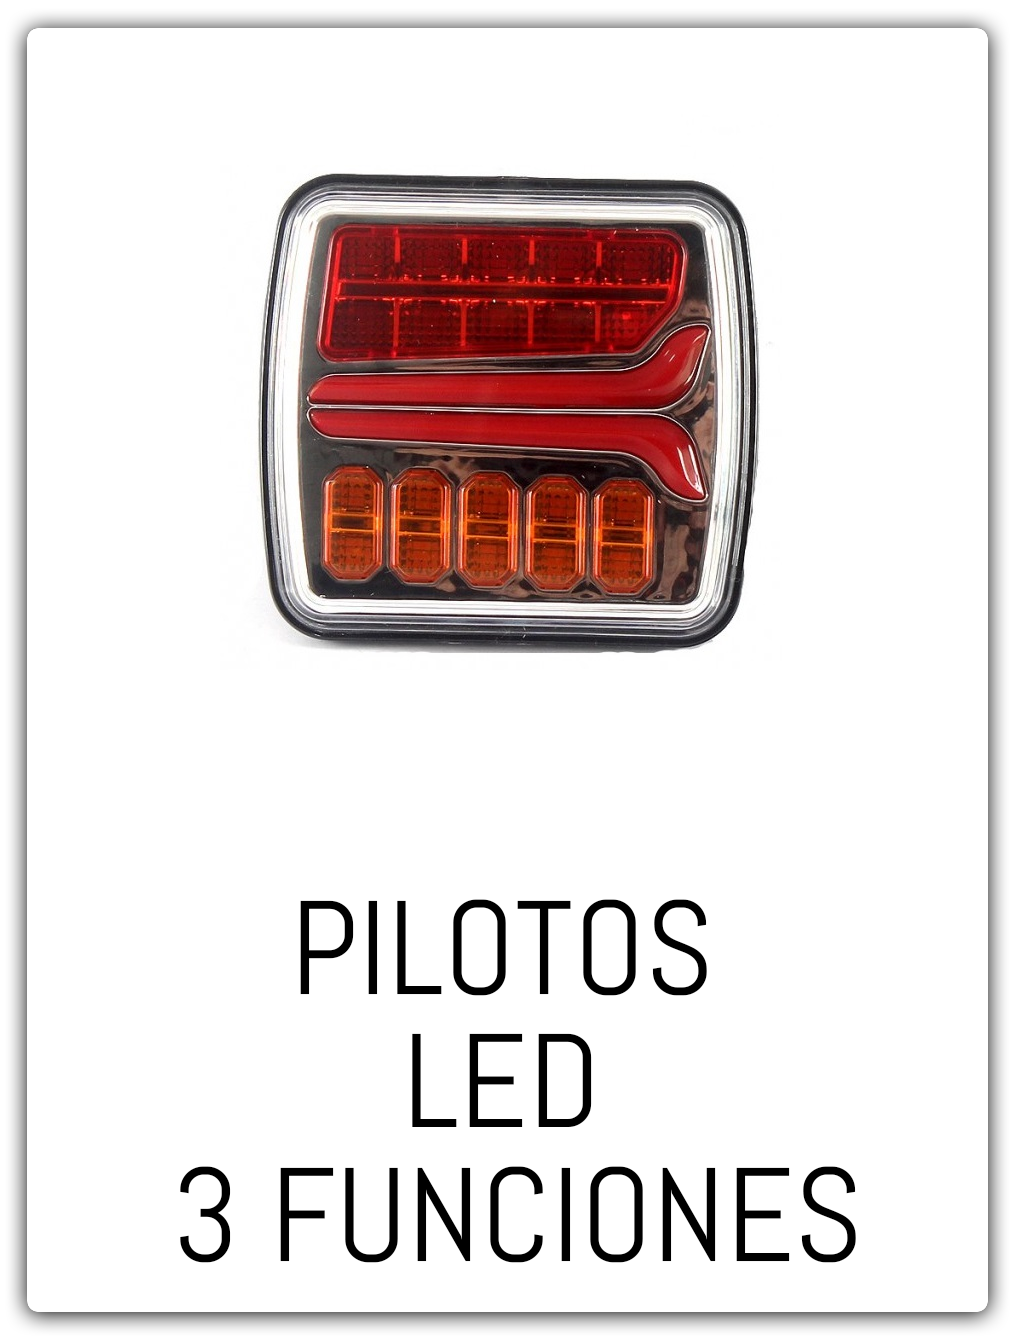 PILOTOS LED 3 FUNCIONES 1.png